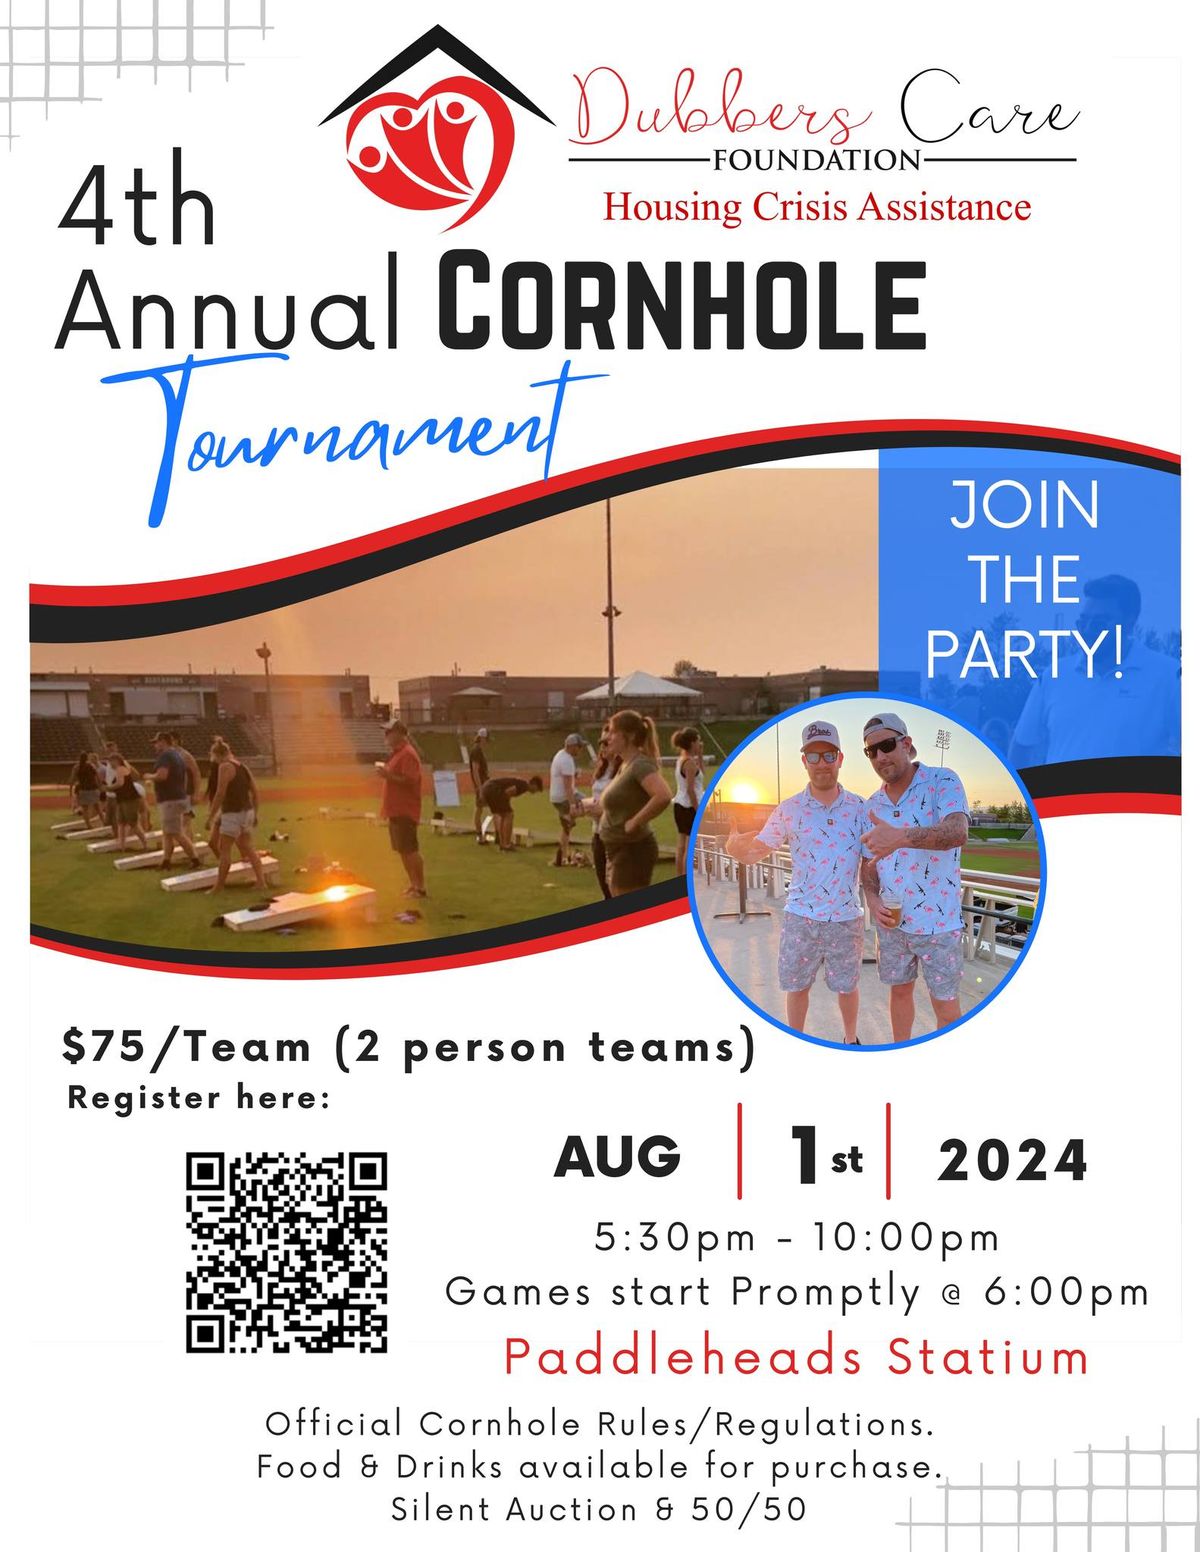 4th Annual Dubbers Care Foundation Cornhole Tournament